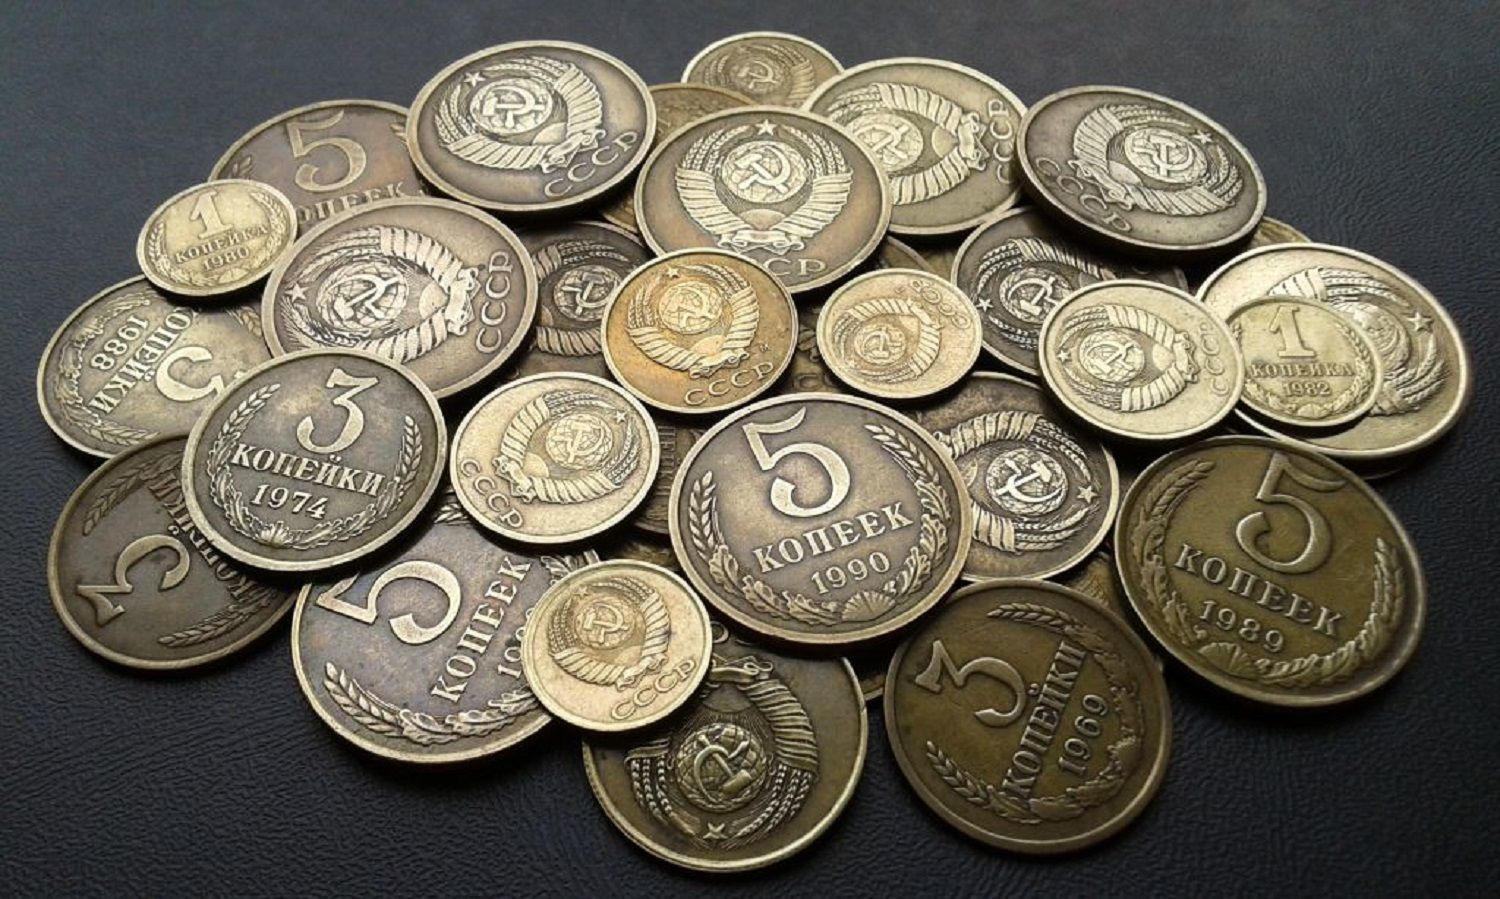 Монеты советского времени